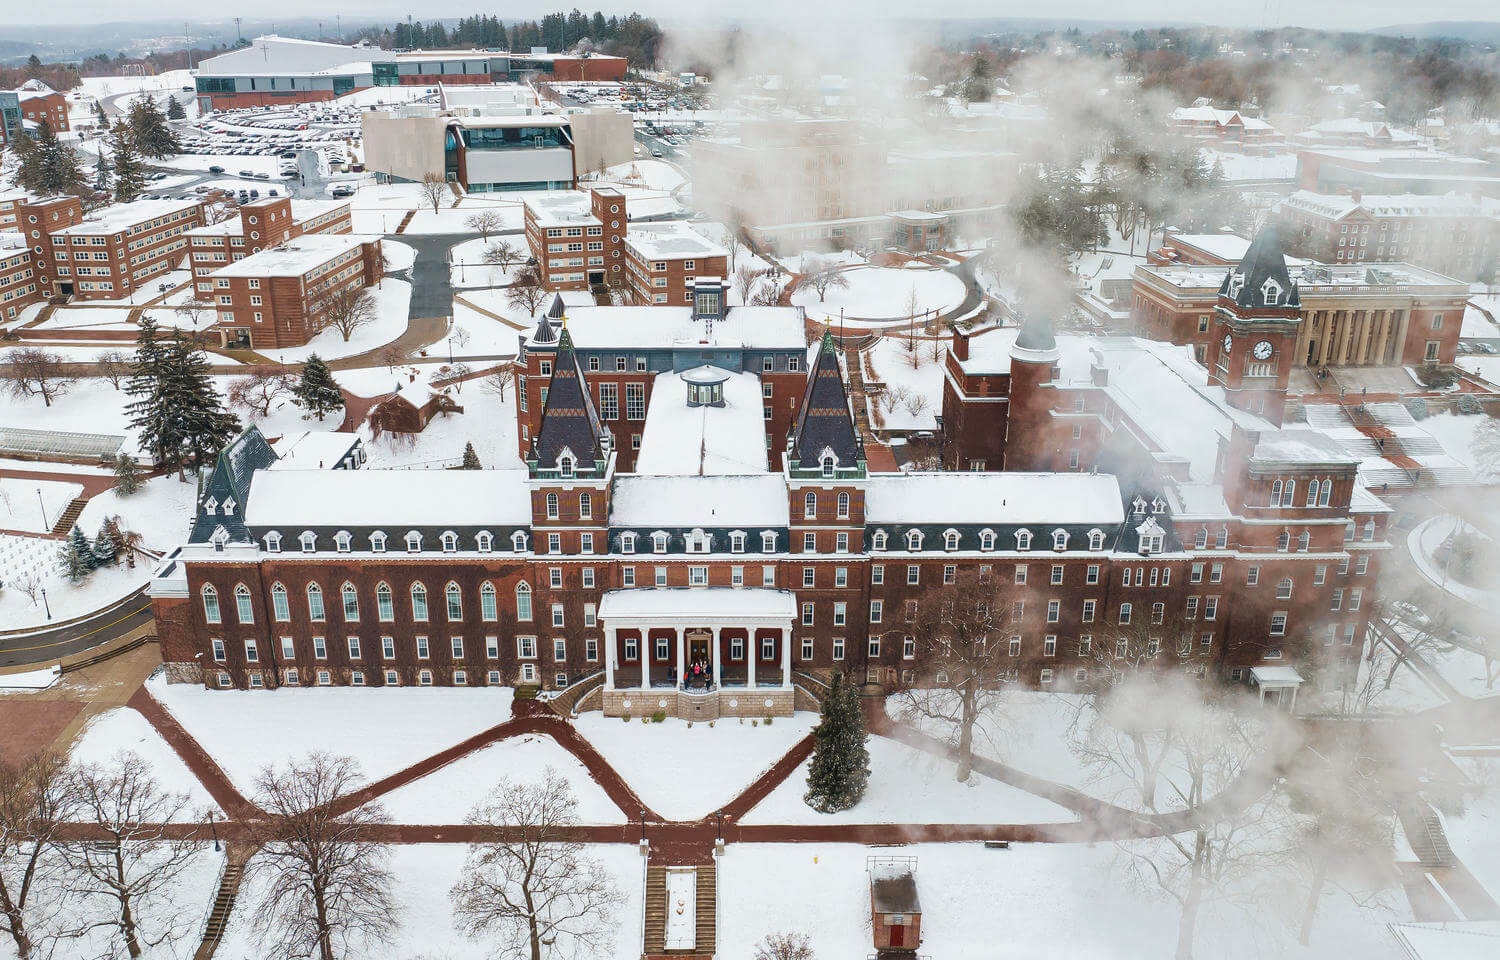 Aerial view of college quad